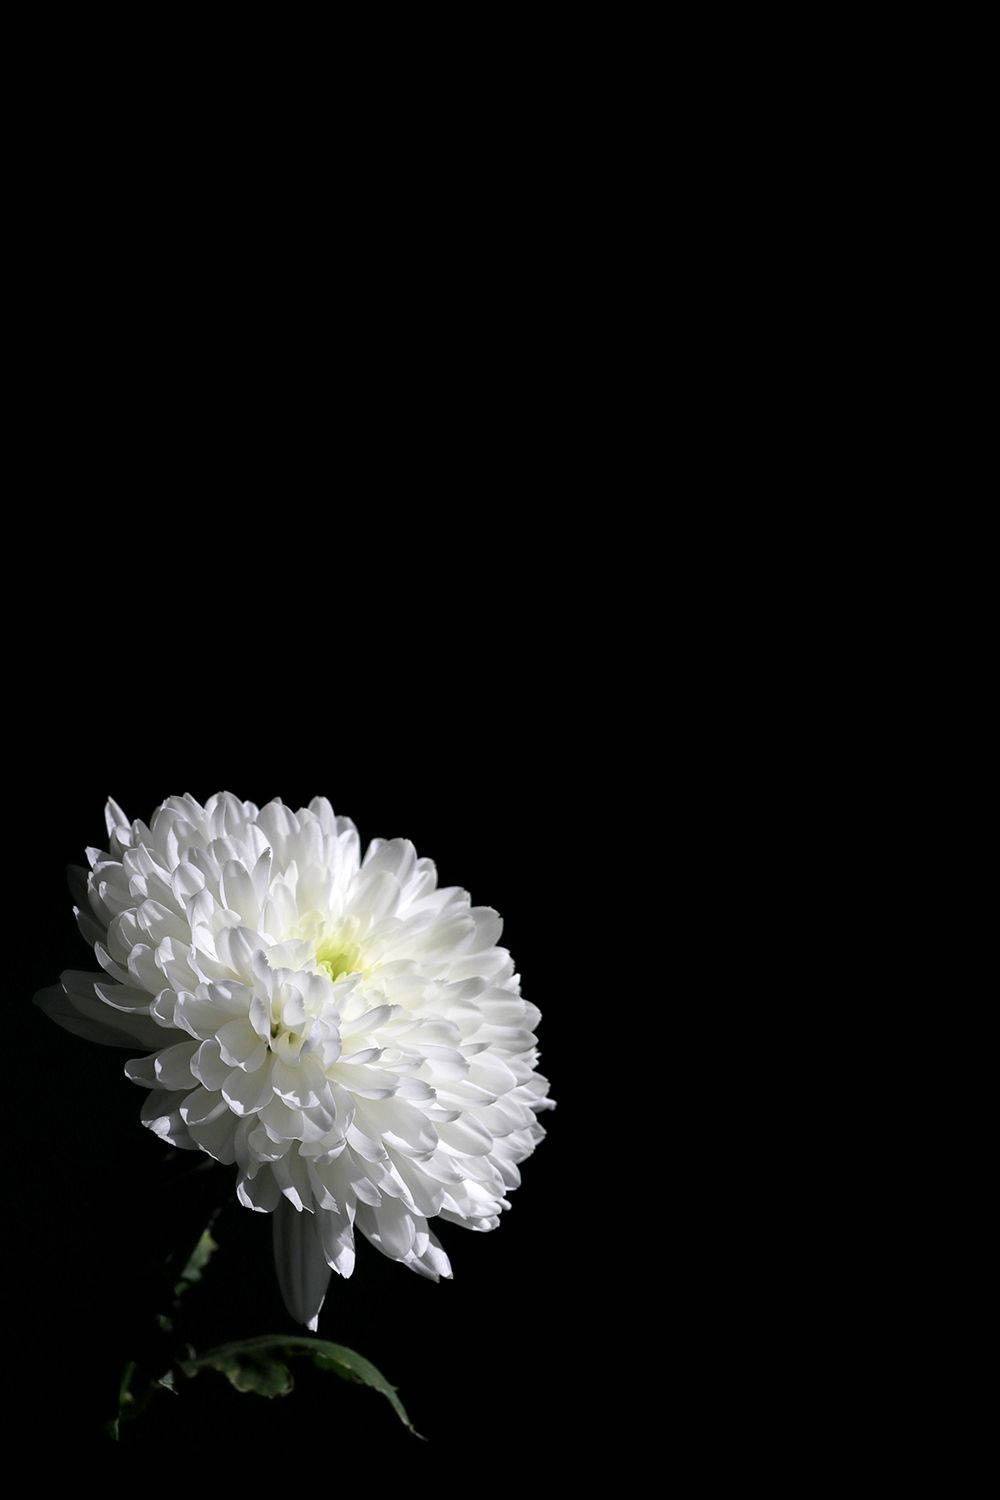 White Floral On Dark